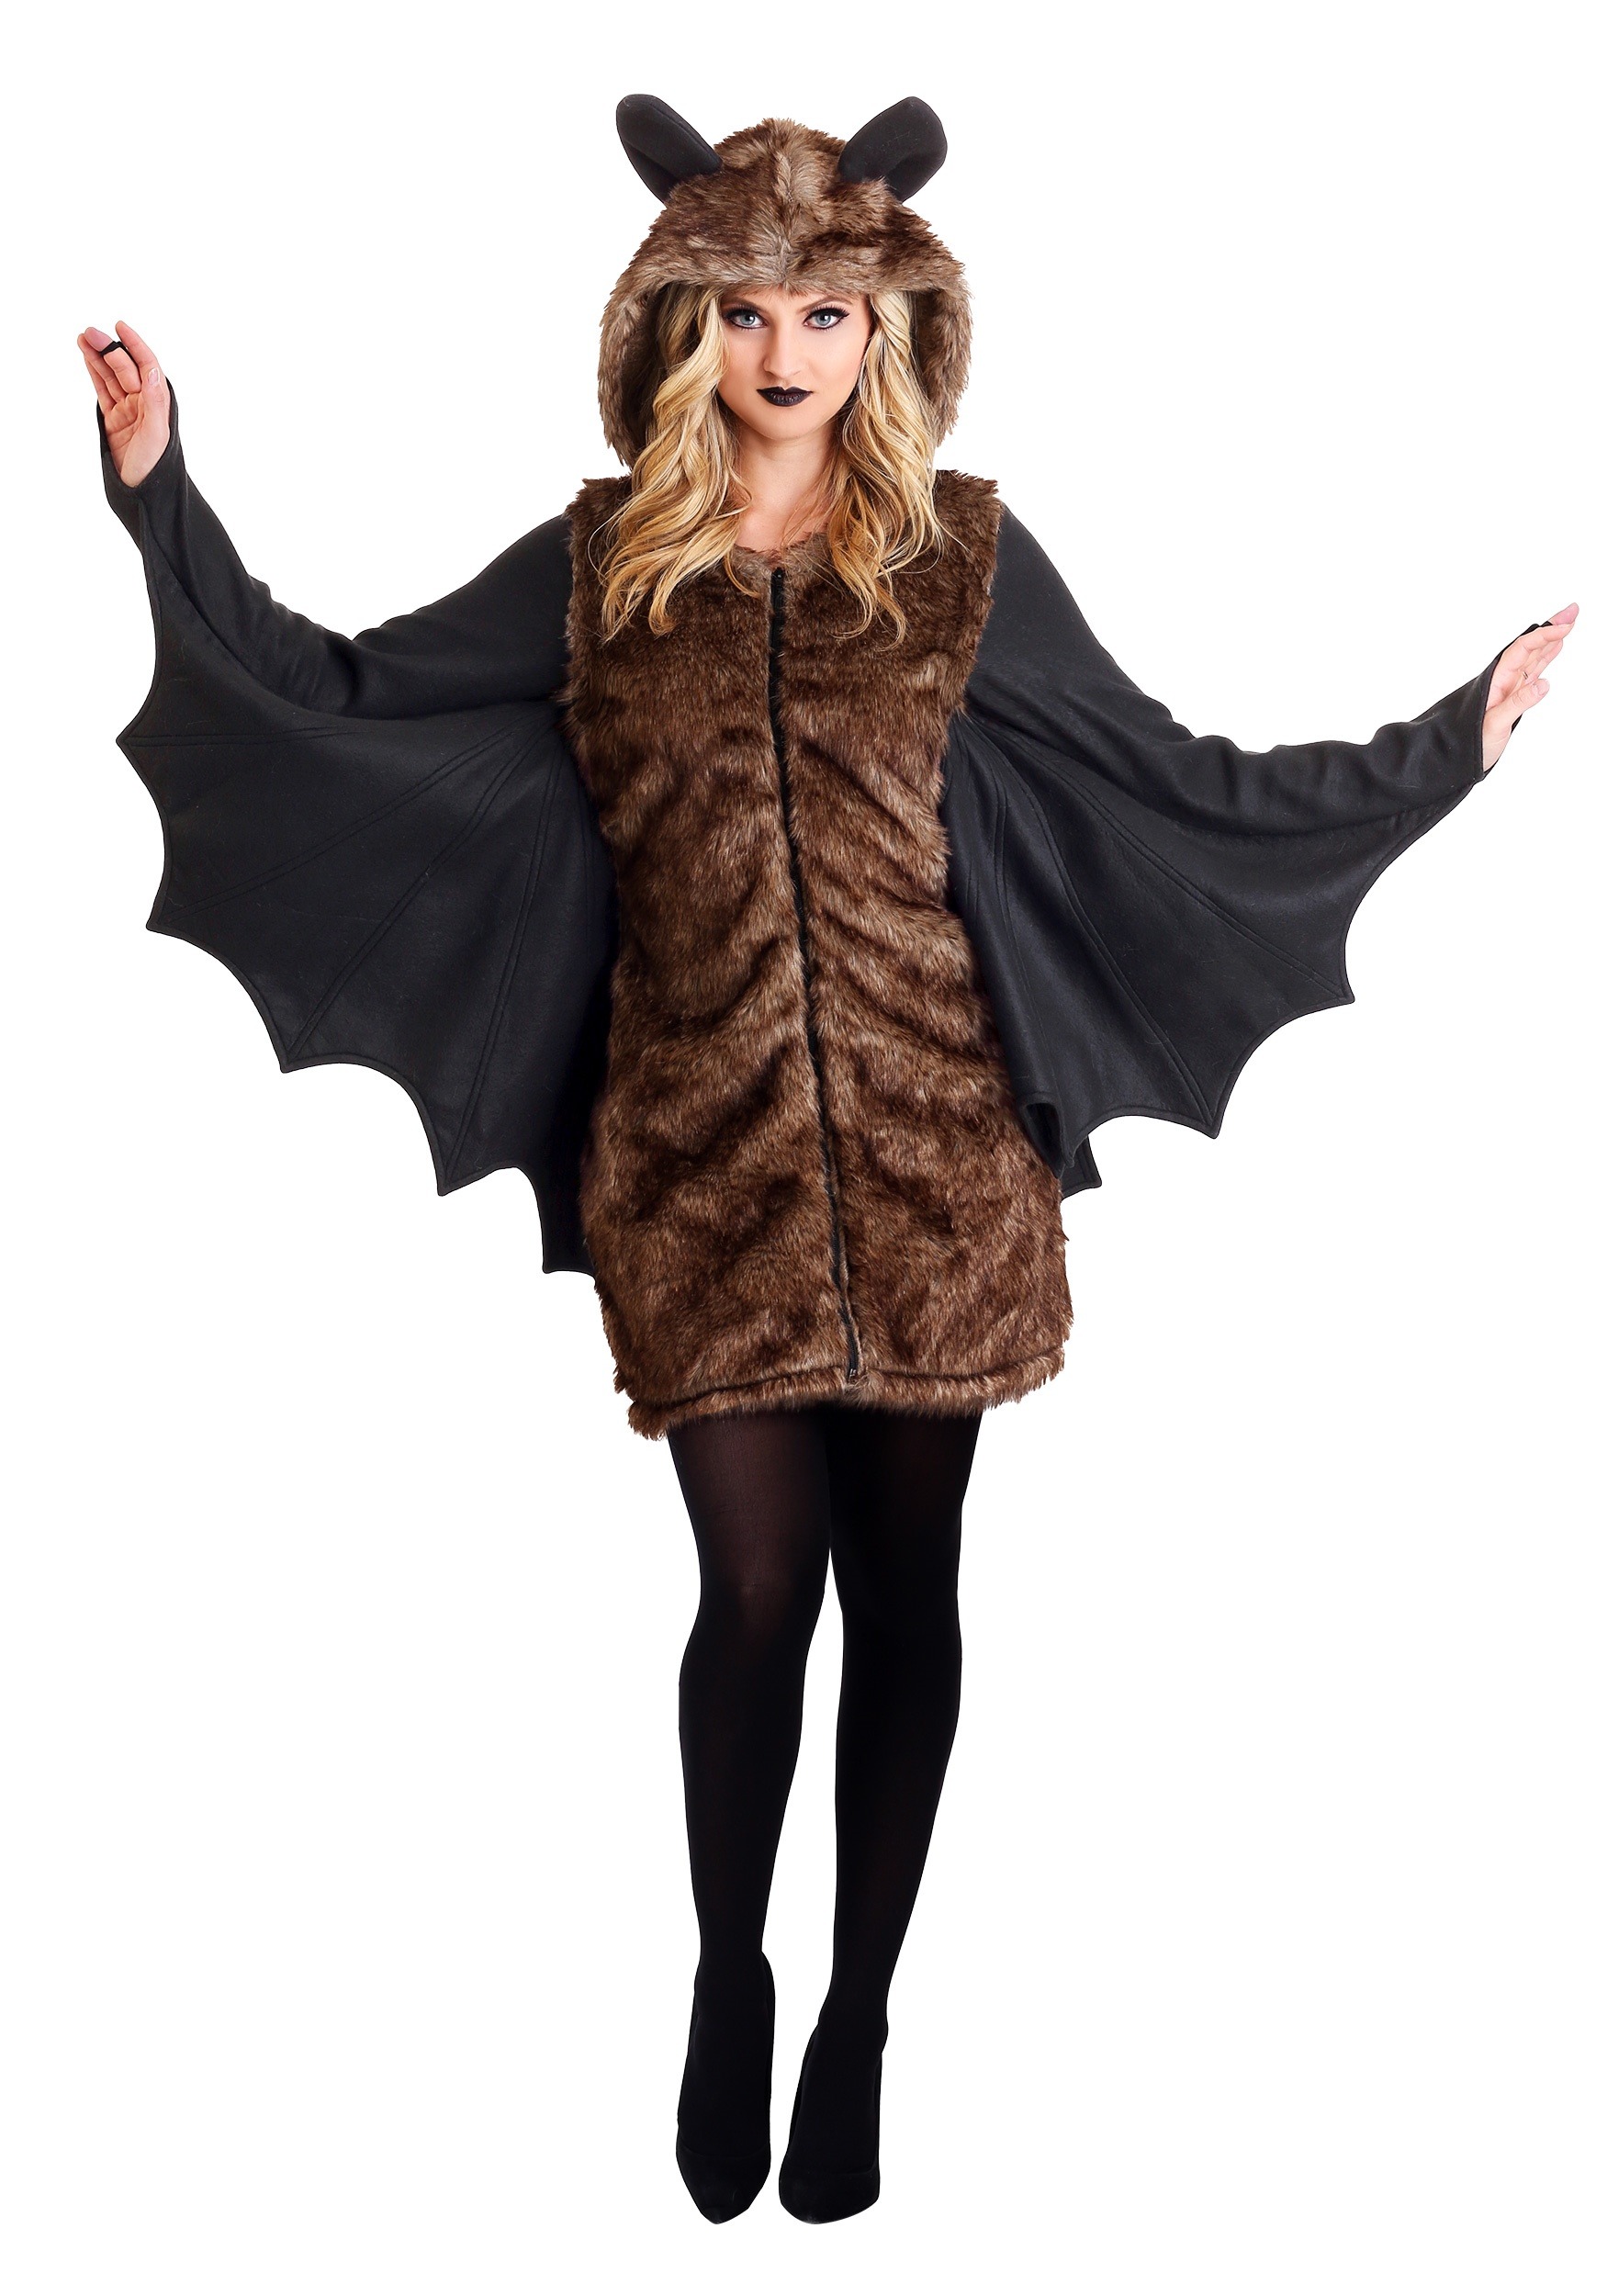 Women’s Deluxe Bat Costume